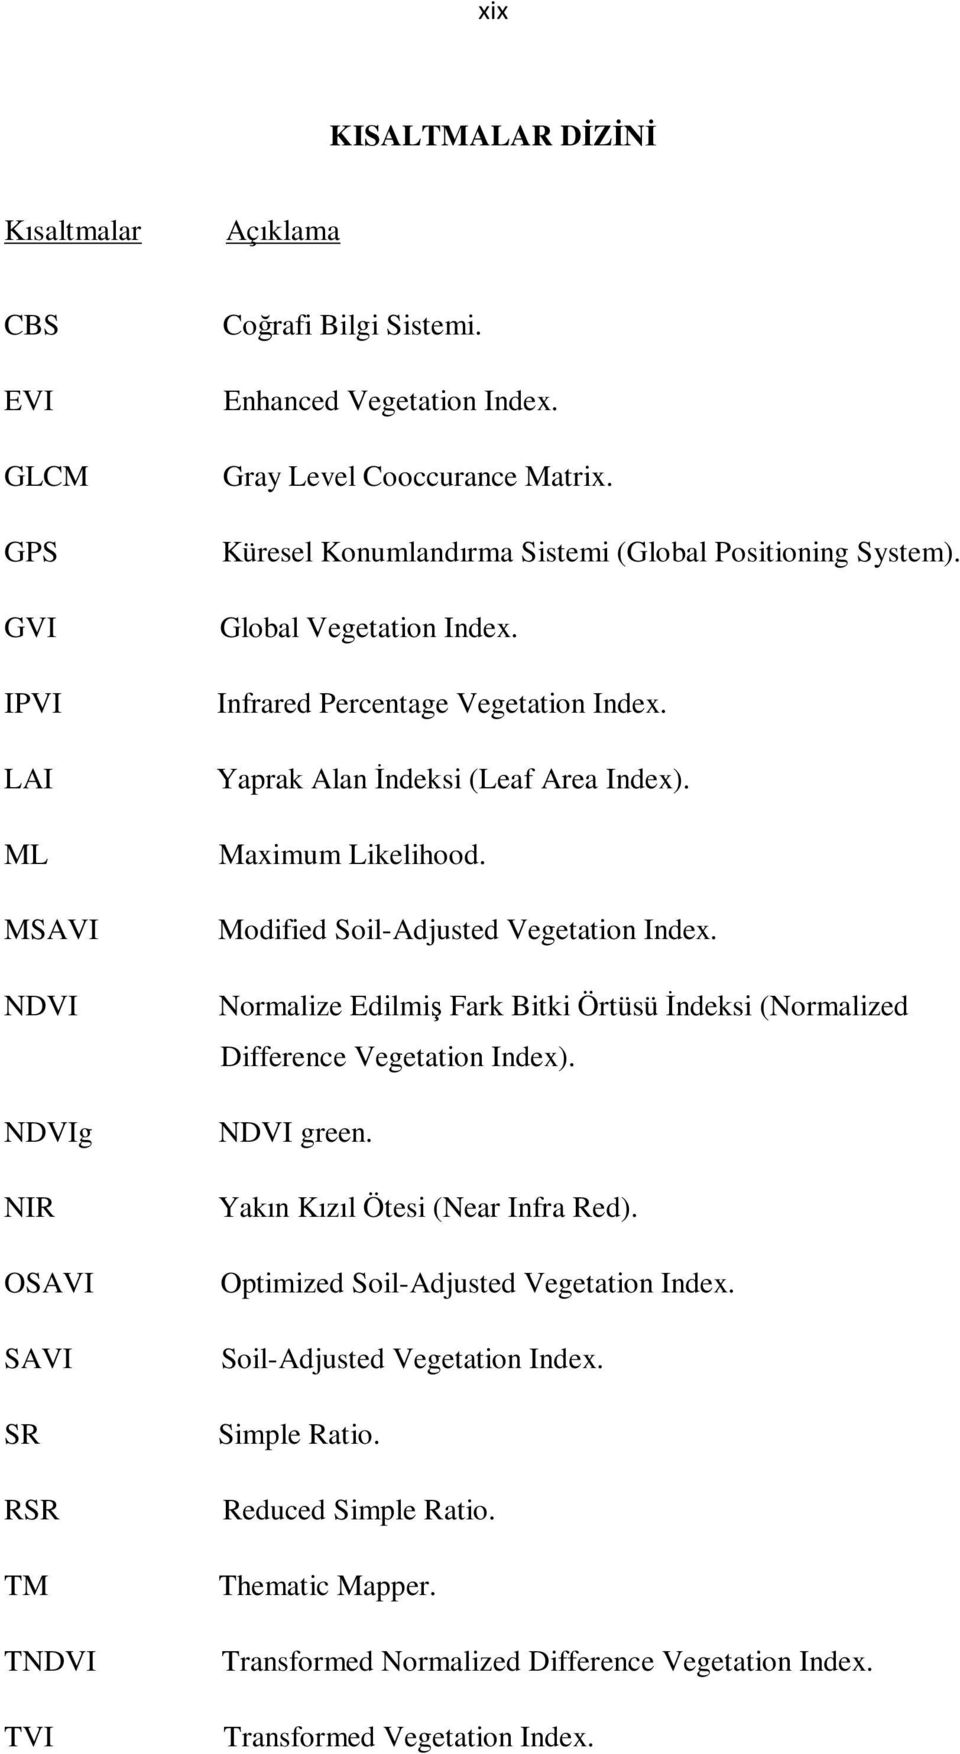 Maximum Likelihood. Modified Soil-Adjusted Vegetation Index. Normalize Edilmiş Fark Bitki Örtüsü Đndeksi (Normalized Difference Vegetation Index). NDVI green. Yakın Kızıl Ötesi (Near Infra Red).